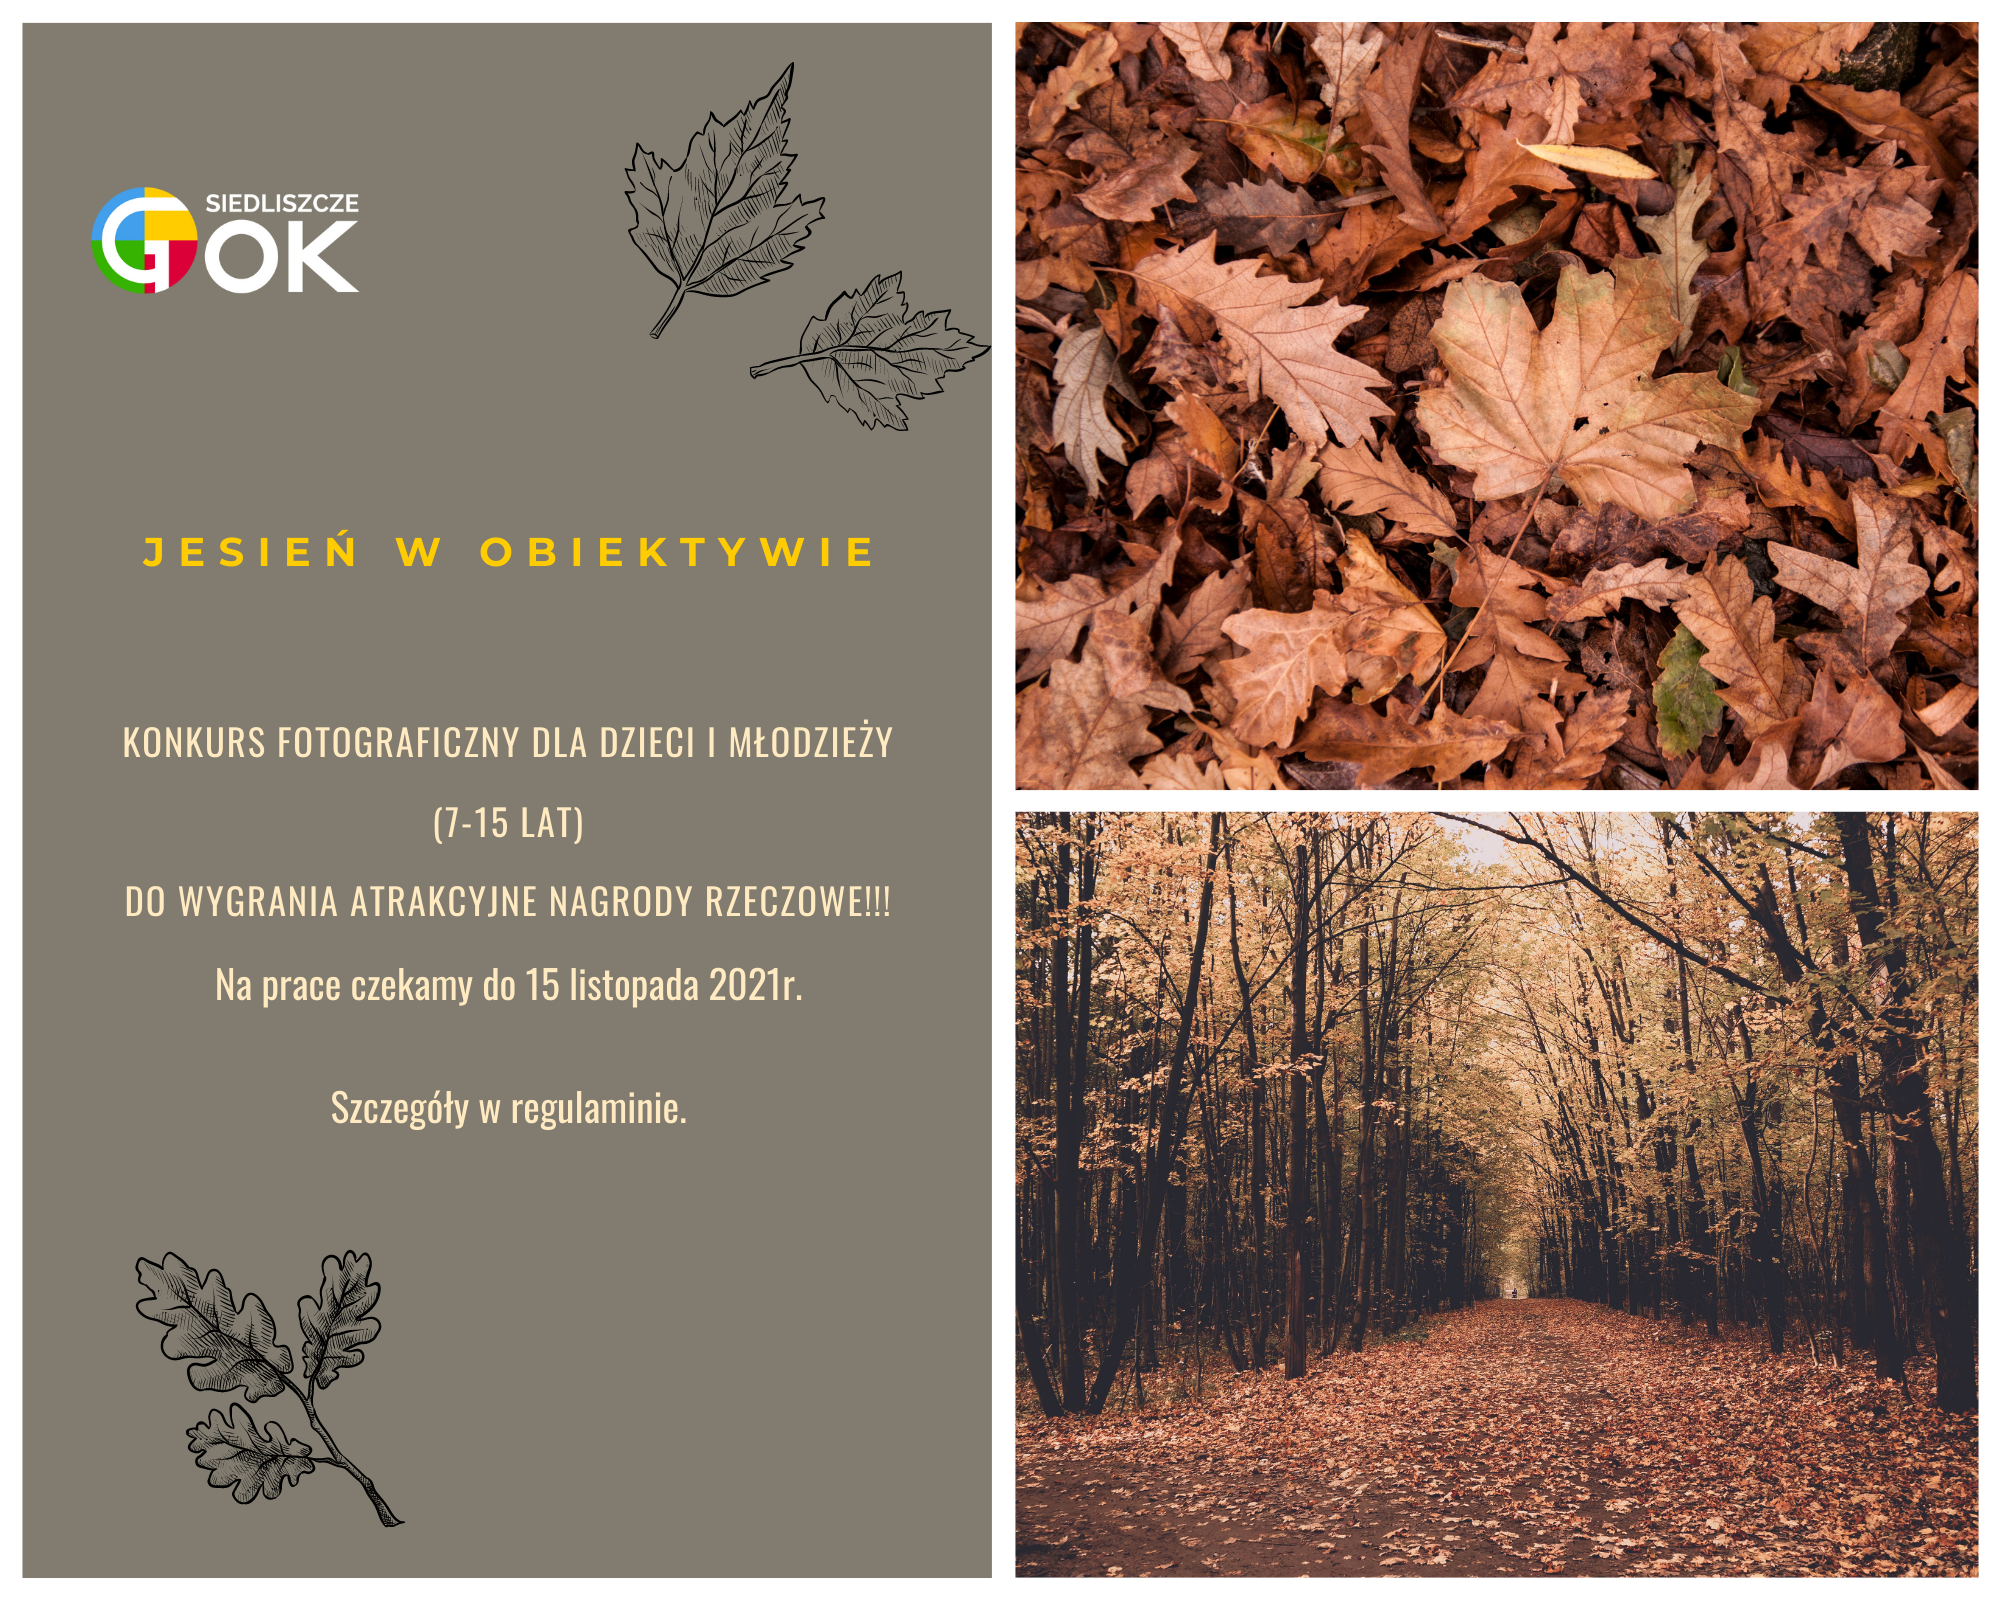 Obrazek przestawia jesienny park oraz liście w kolorach brązowyck